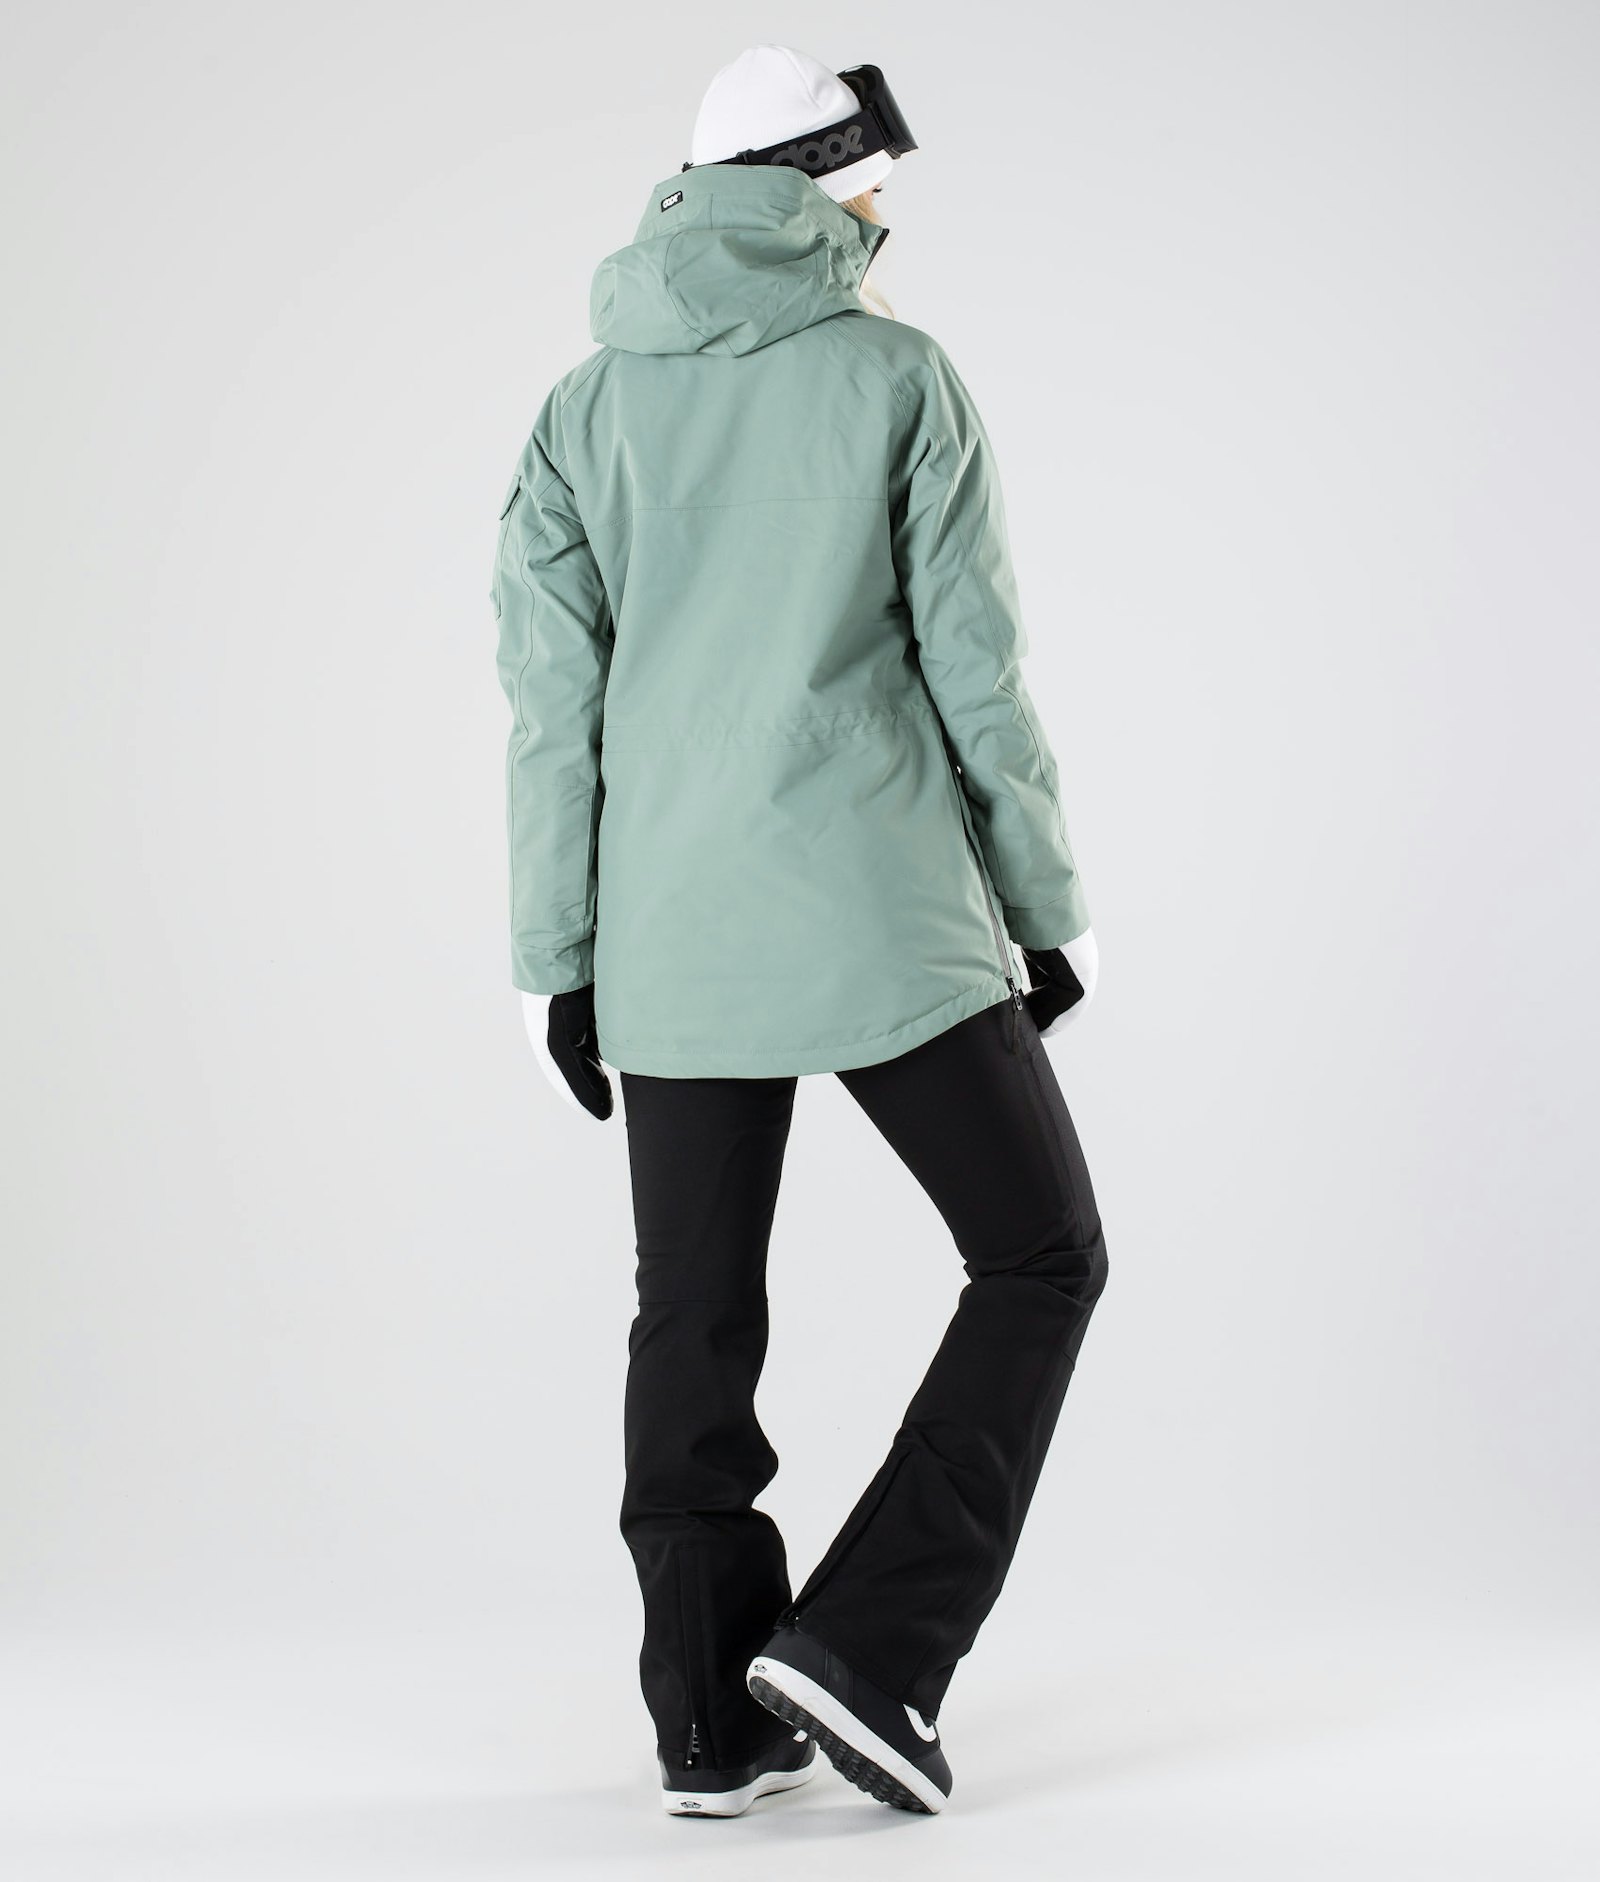 Akin W 2019 Veste Snowboard Femme Faded Green